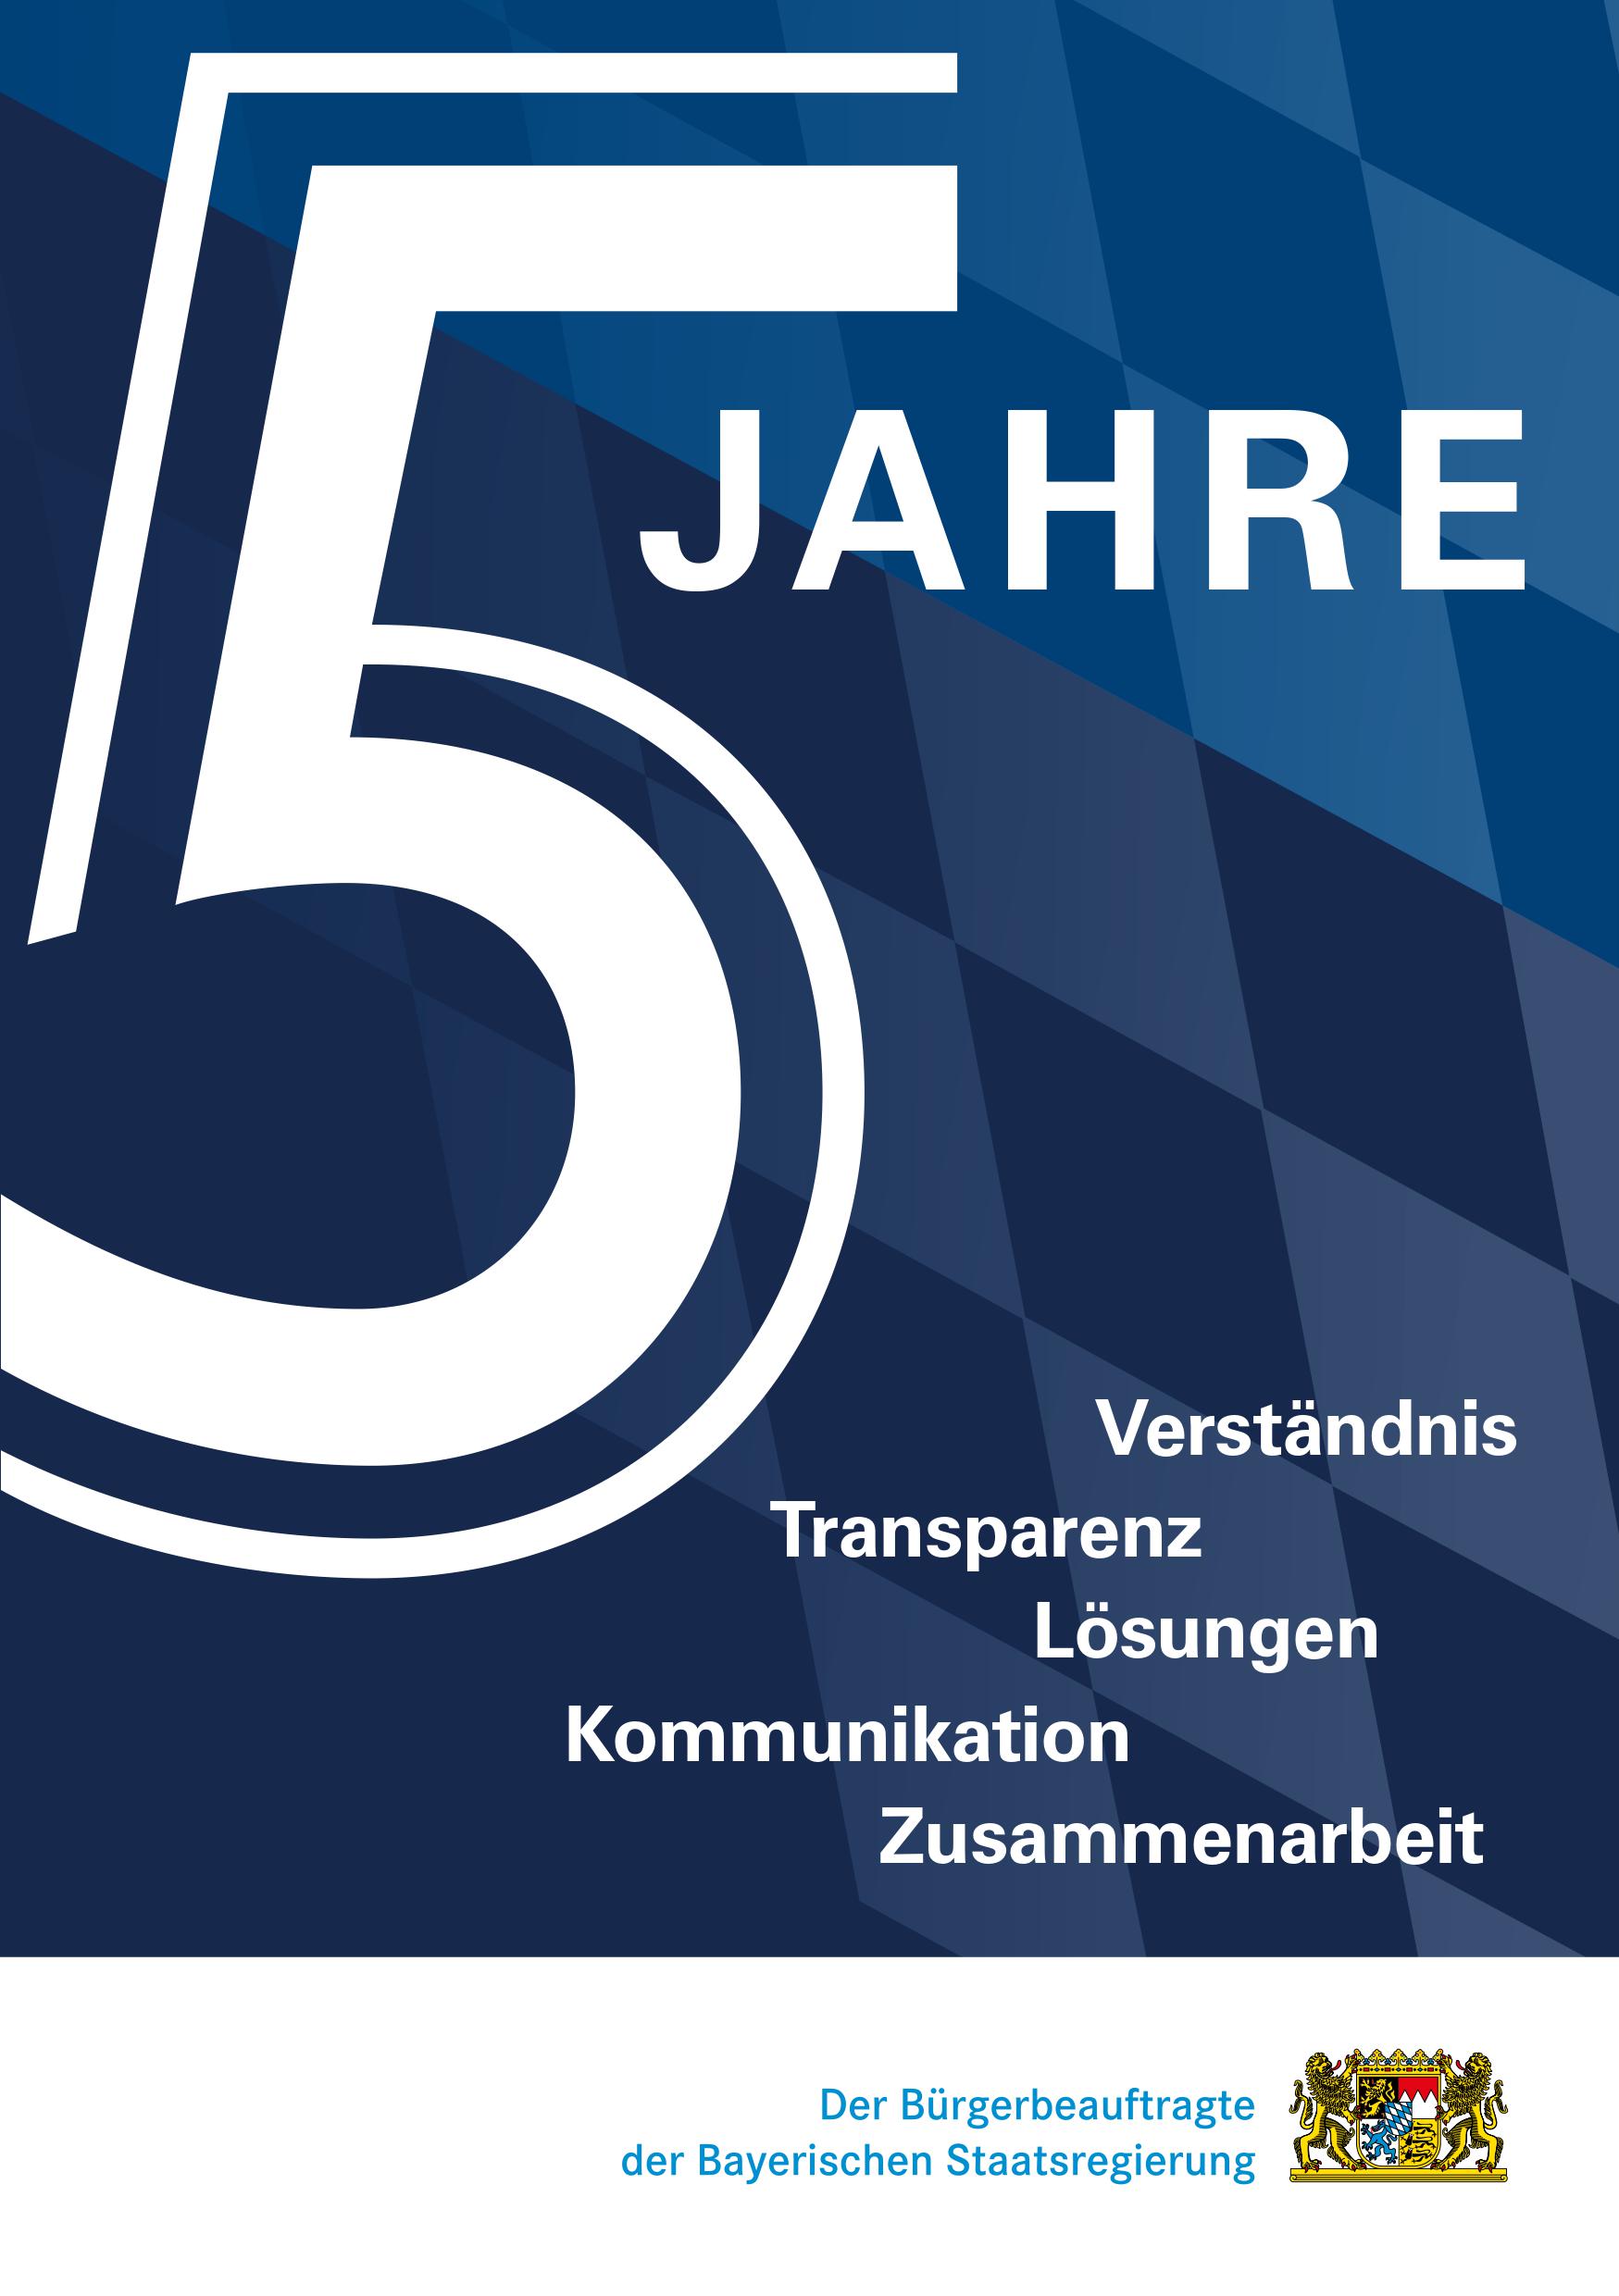 5 Jahre der Bürgerbeauftragte der Bayerischen Staatsregierung